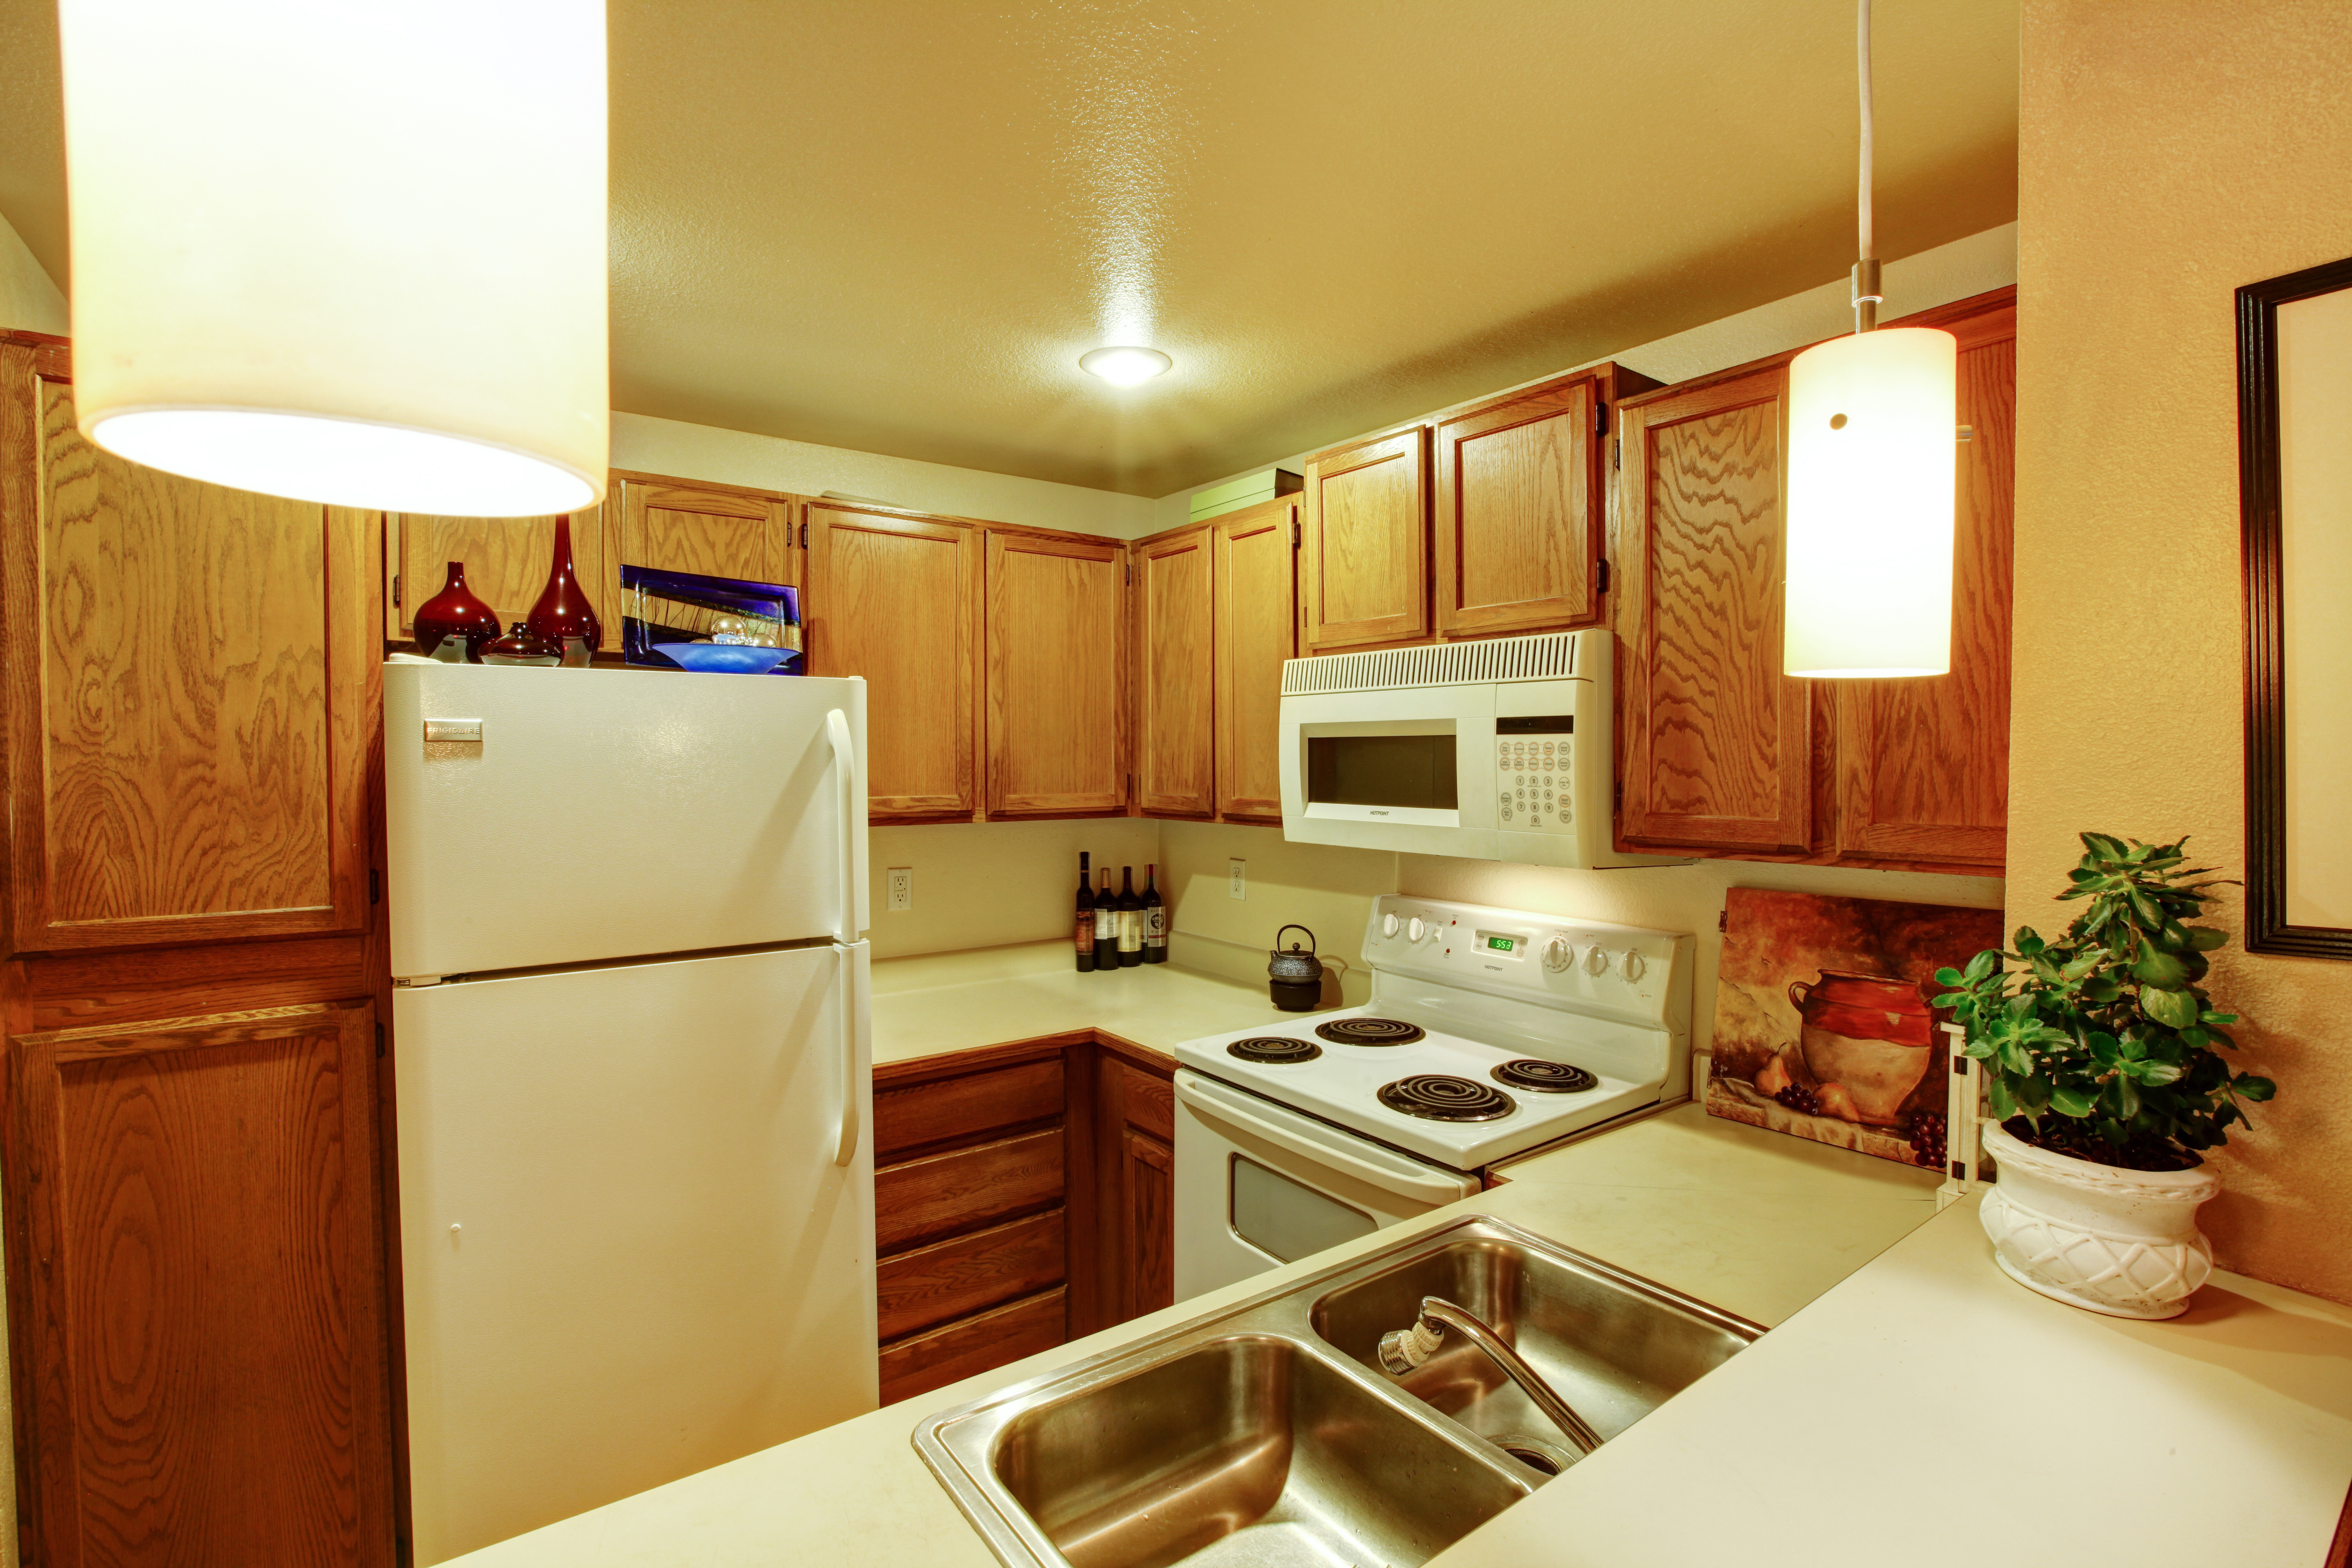 Ein Blick auf Küchenschränke mit Spüle und weißen Altgeräten | Quelle: Shutterstock